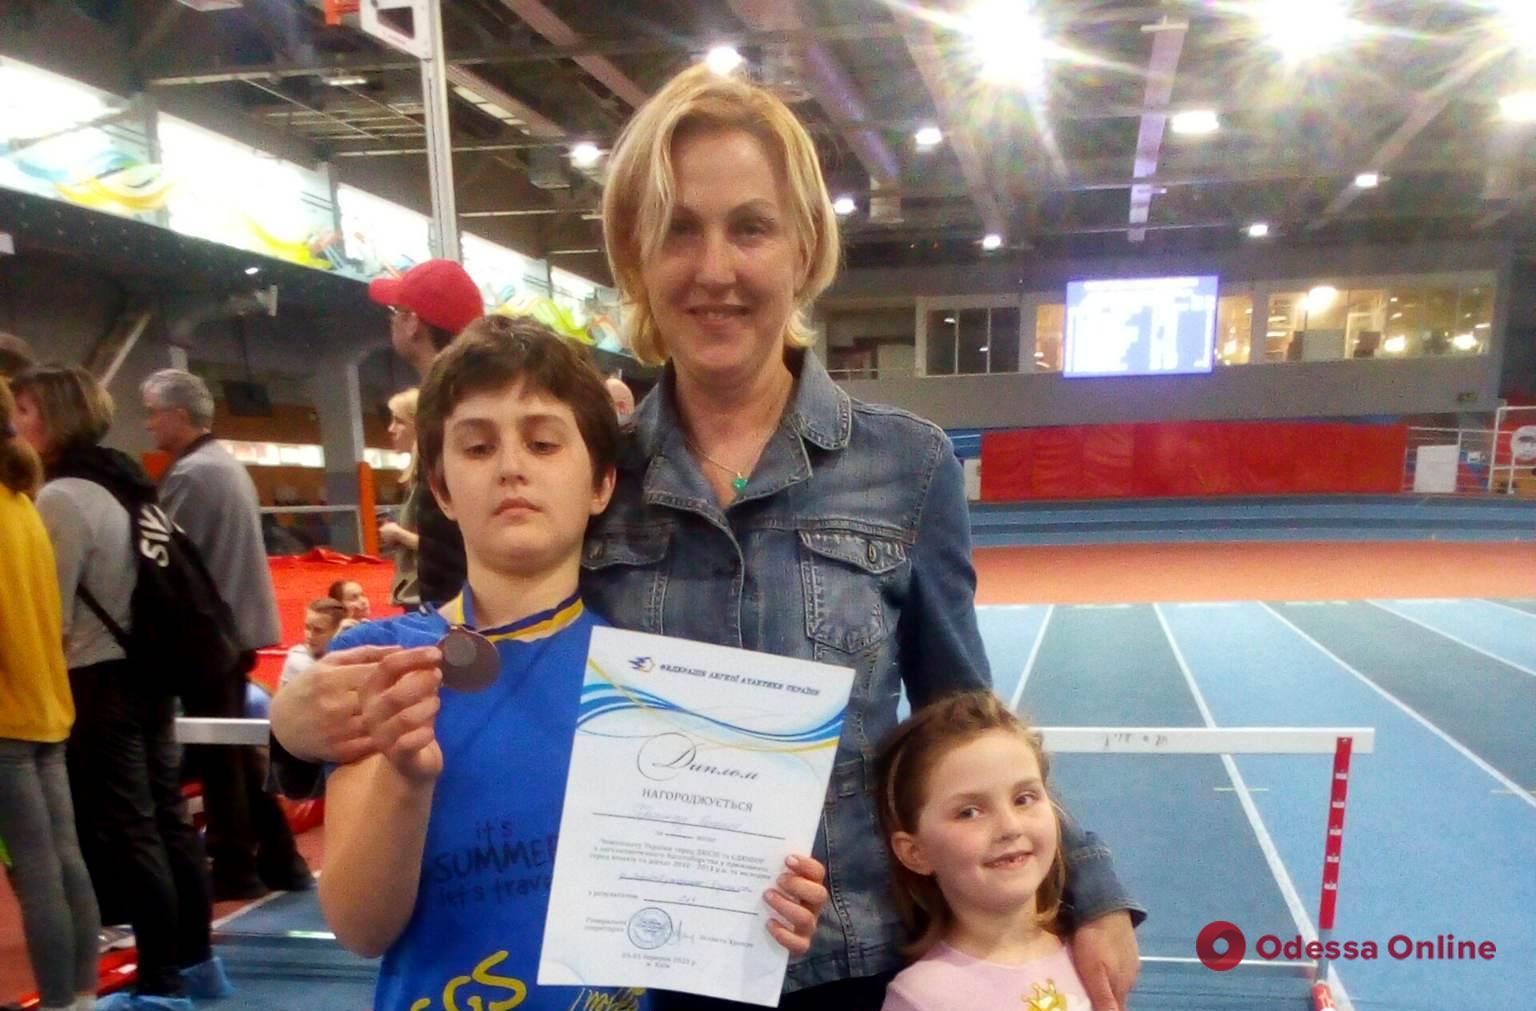 Юный одессит завоевал медаль чемпионата Украины по легкой атлетике после тренировок на обычной детской площадке